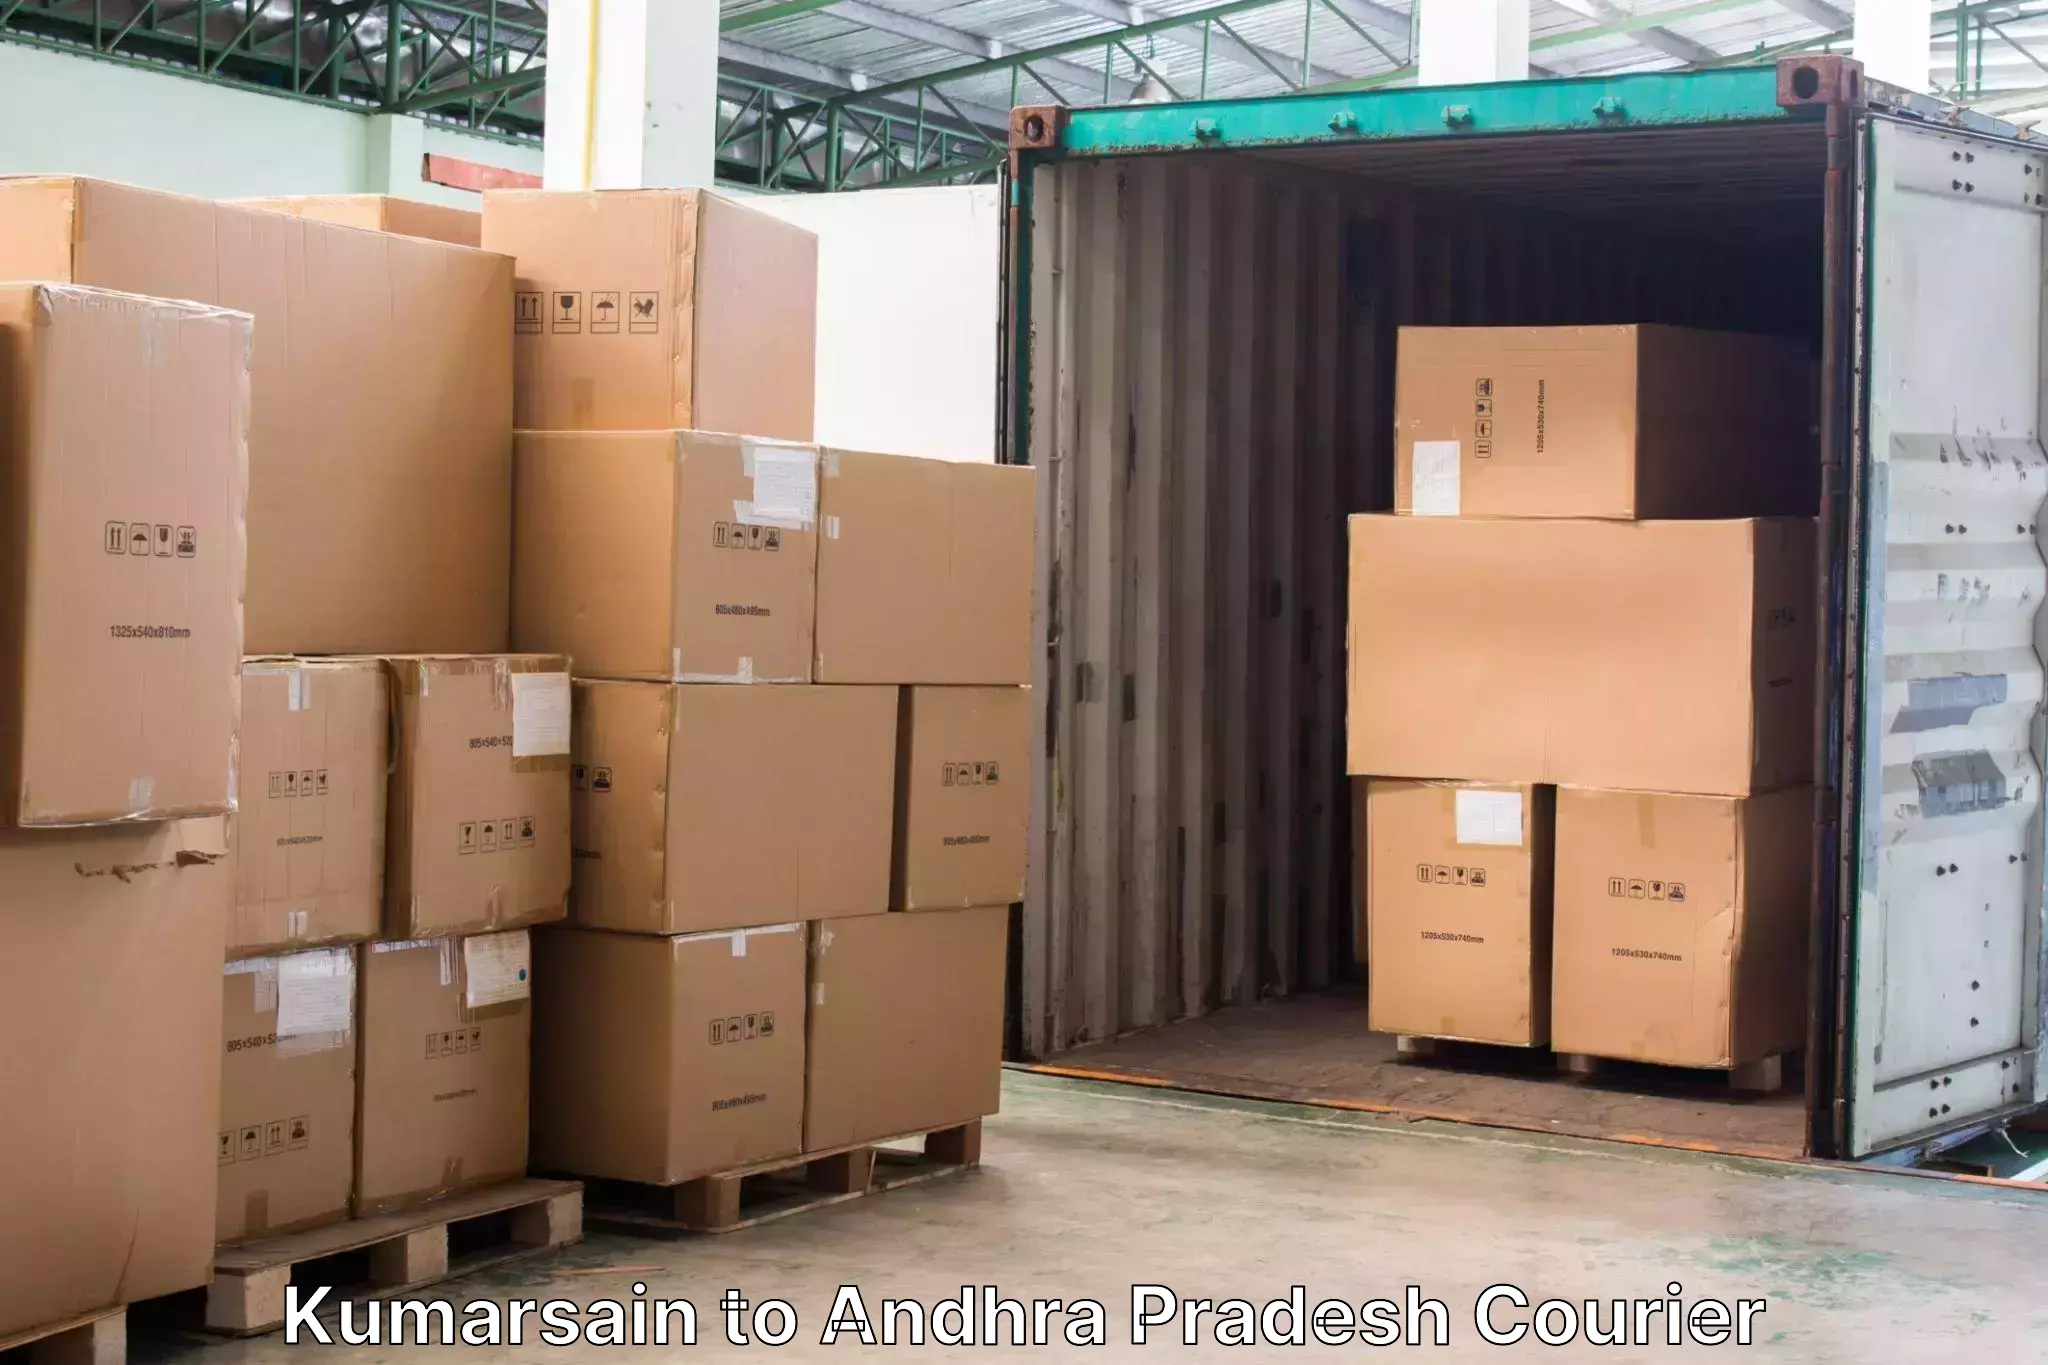 Luggage delivery system Kumarsain to Chilakaluripet